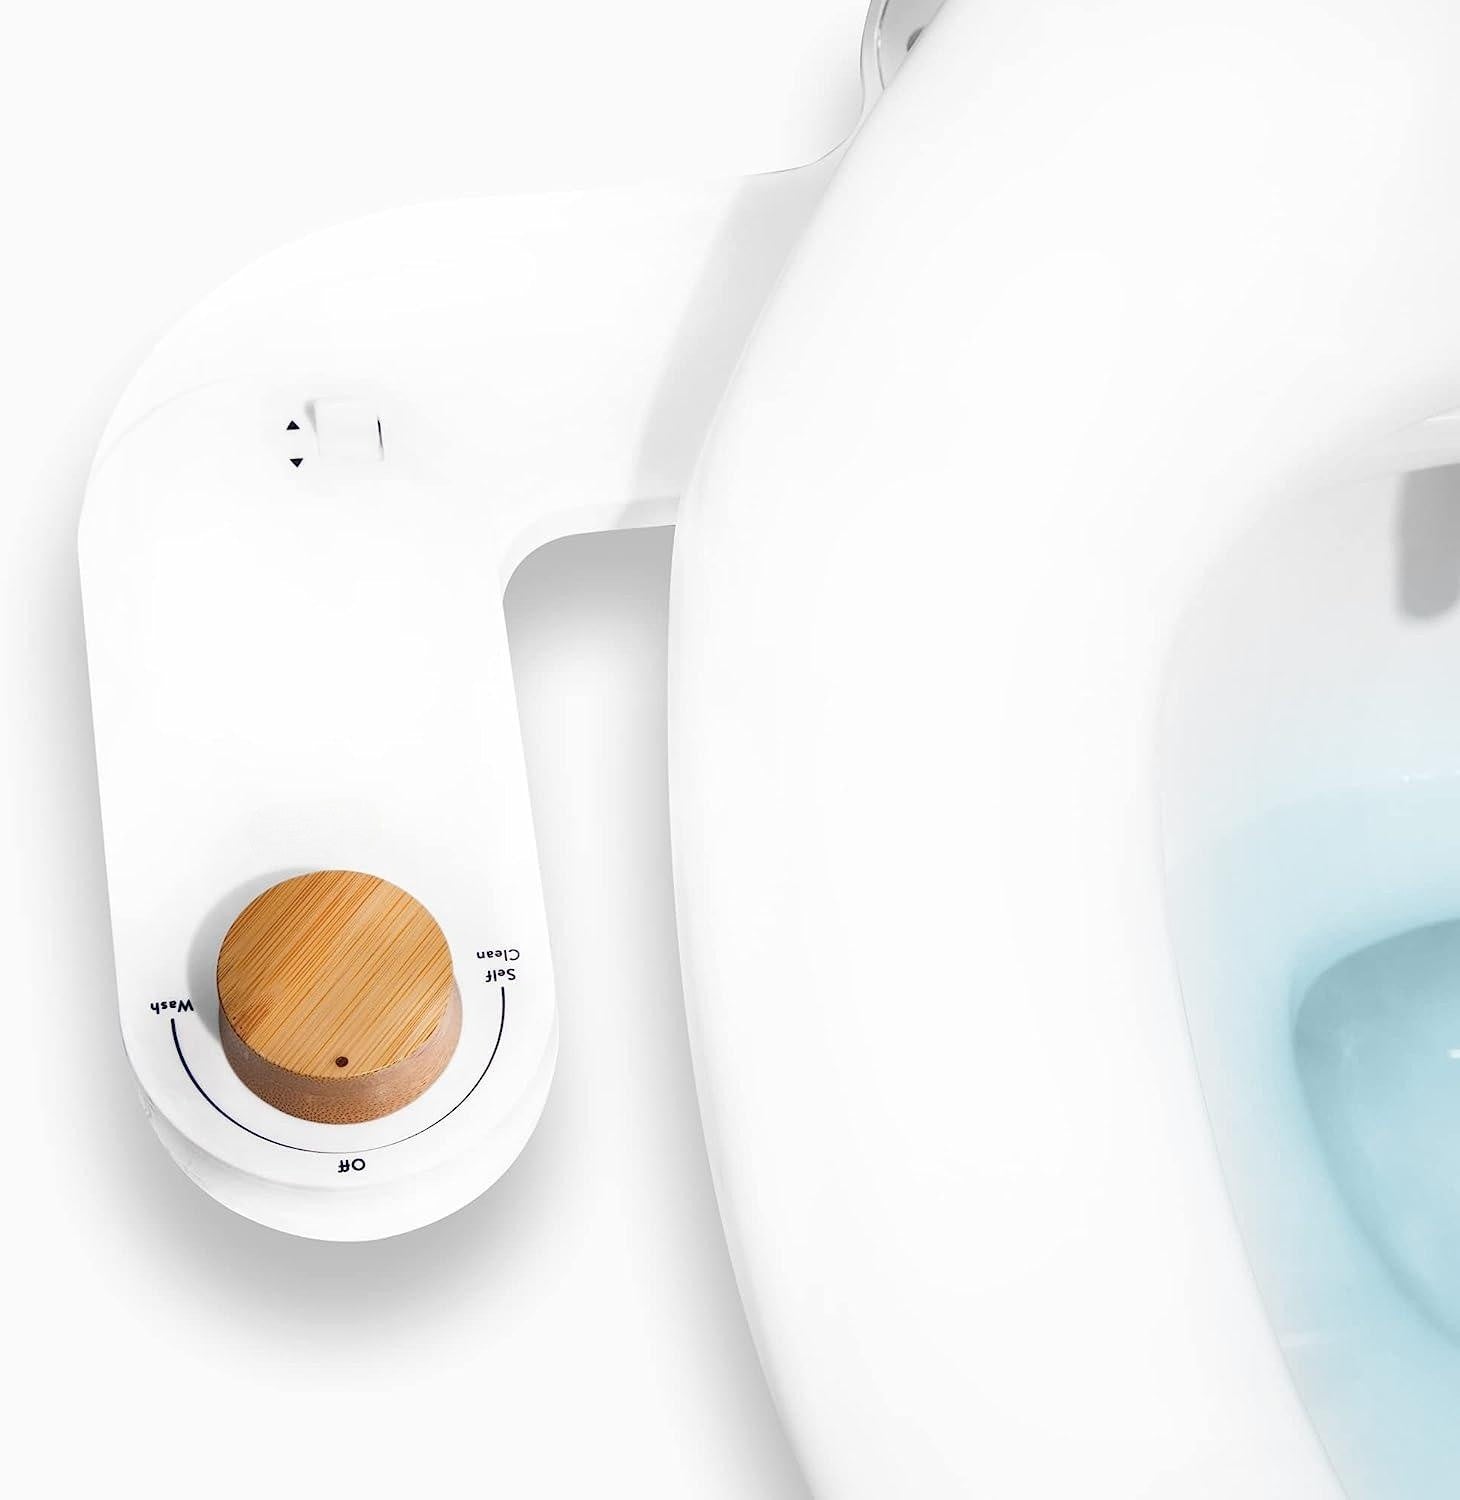 ButtSpa Bidet Attachment For Toilets